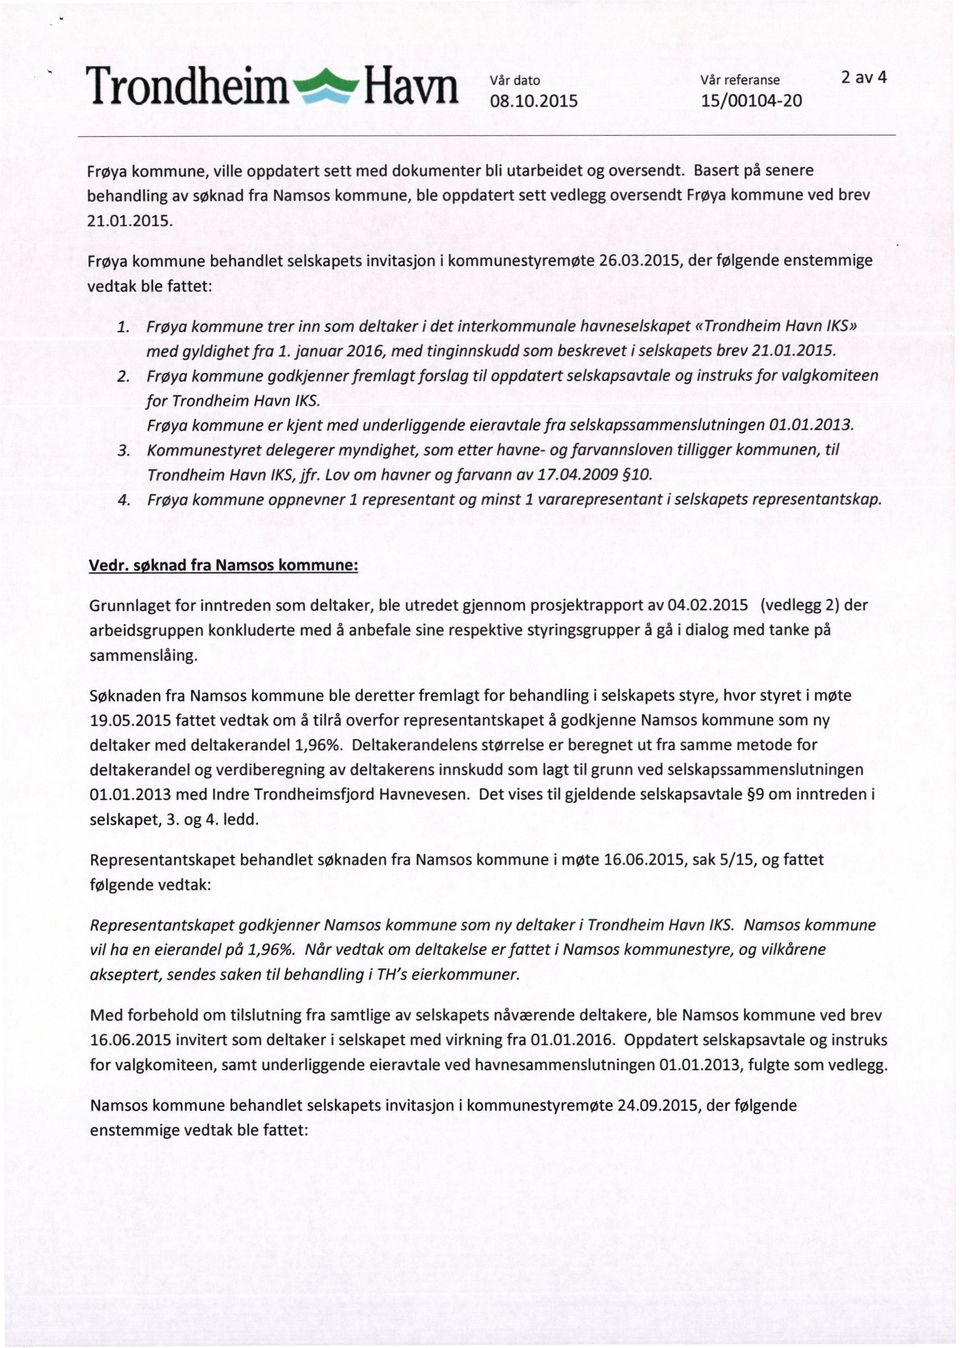 Frøya kommune behandlet selskapets invitasjon i kommunestyremøte 26.03.2015, der følgende enstemmige vedtak ble fattet: 1.